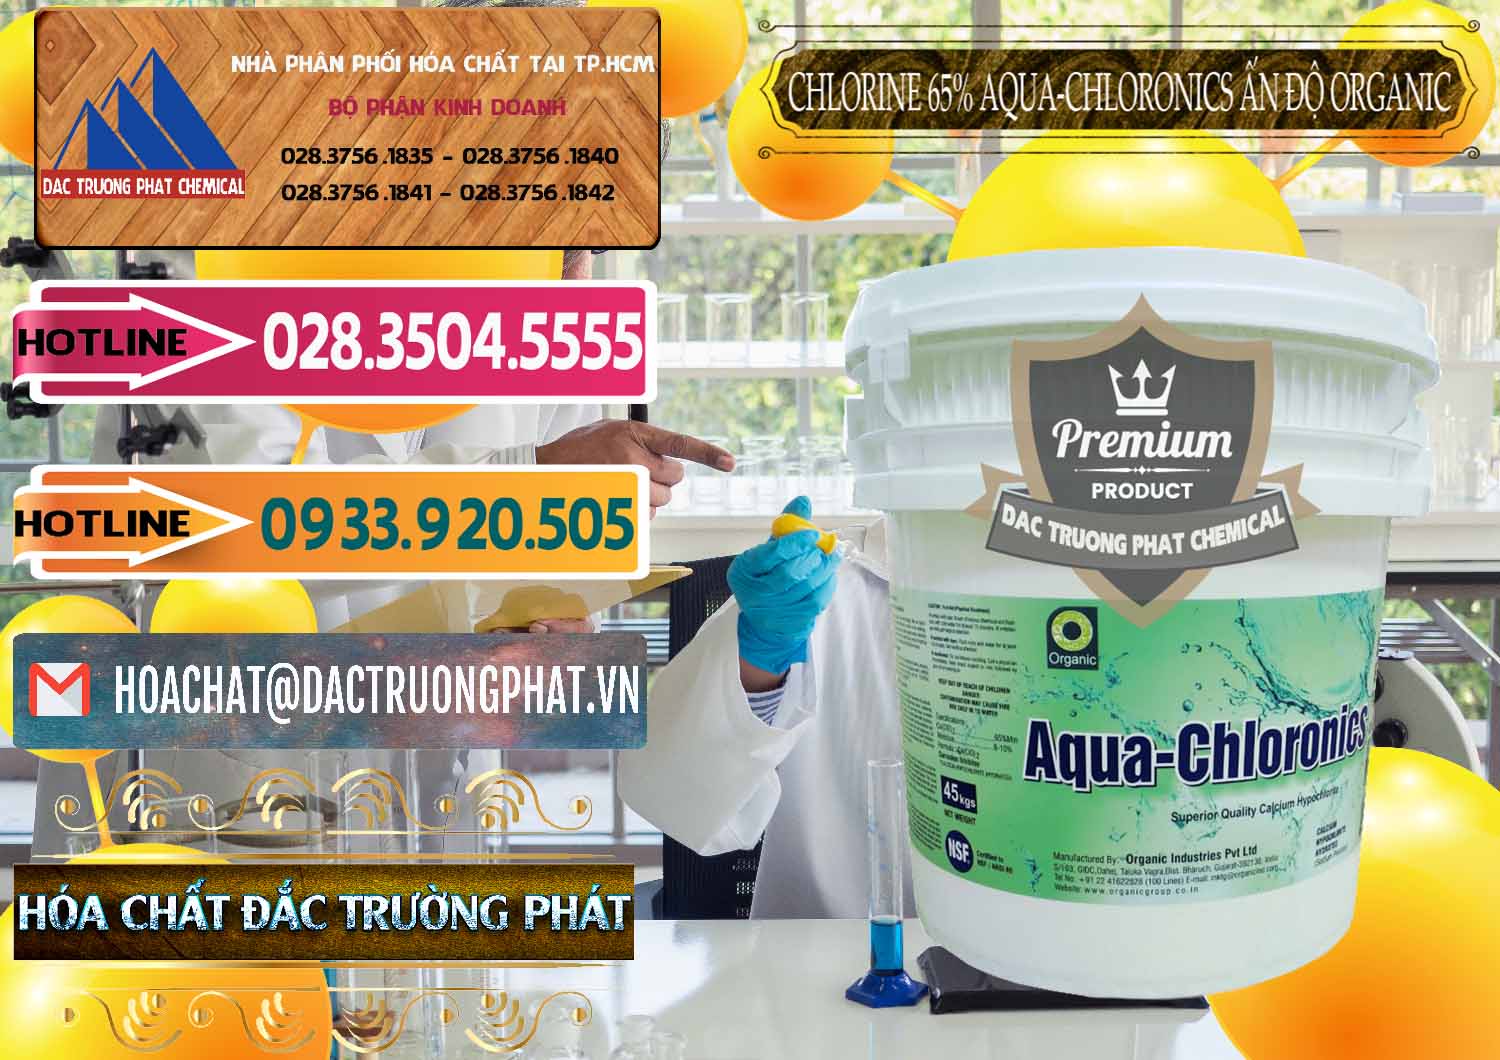 Nơi chuyên nhập khẩu - bán Chlorine – Clorin 65% Aqua-Chloronics Ấn Độ Organic India - 0210 - Nơi chuyên bán - cung cấp hóa chất tại TP.HCM - dactruongphat.vn